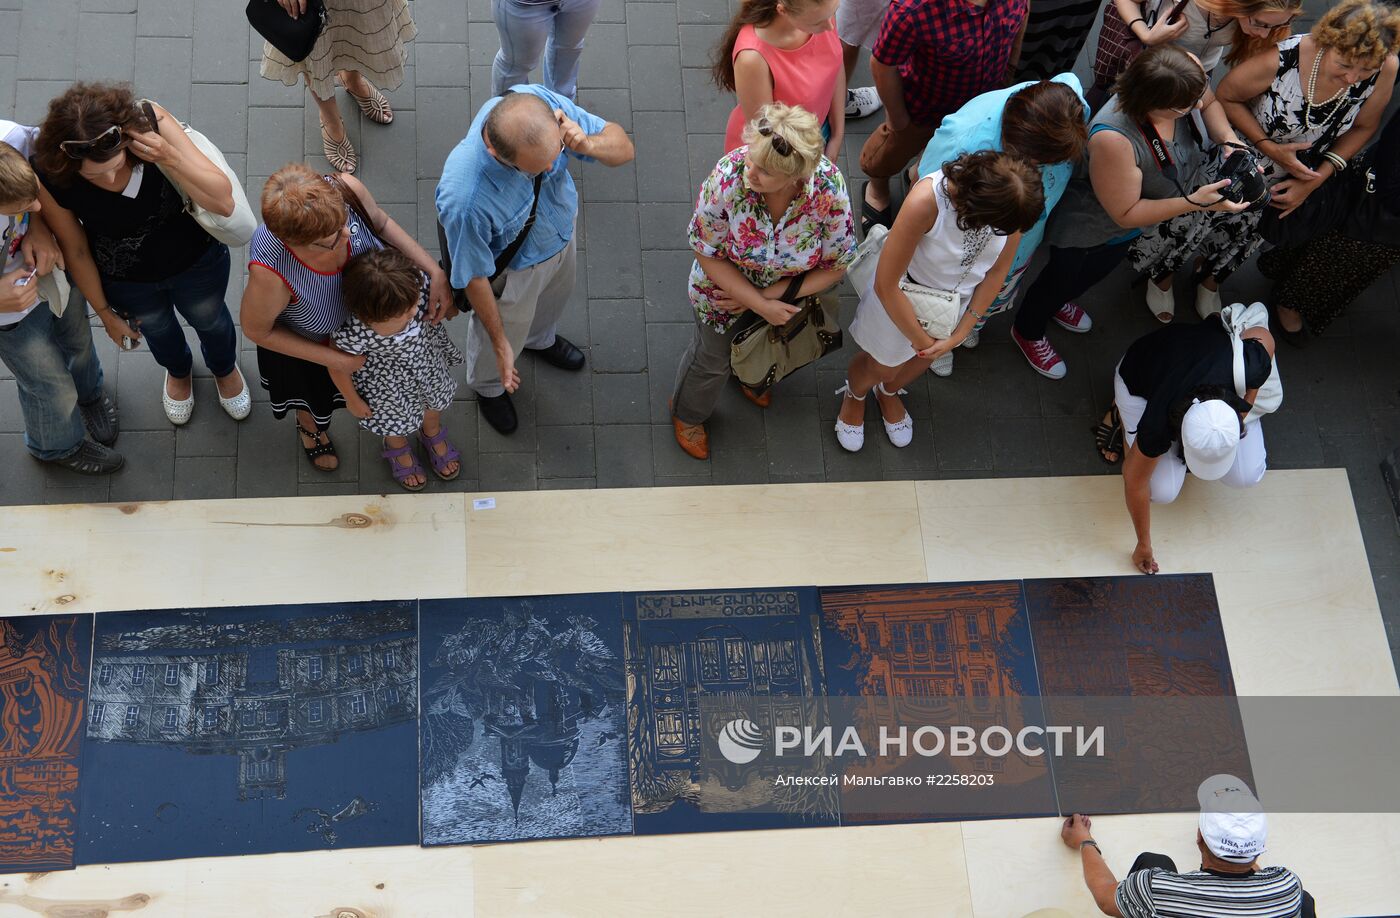 Самую большую гравюру в России создали в Омске